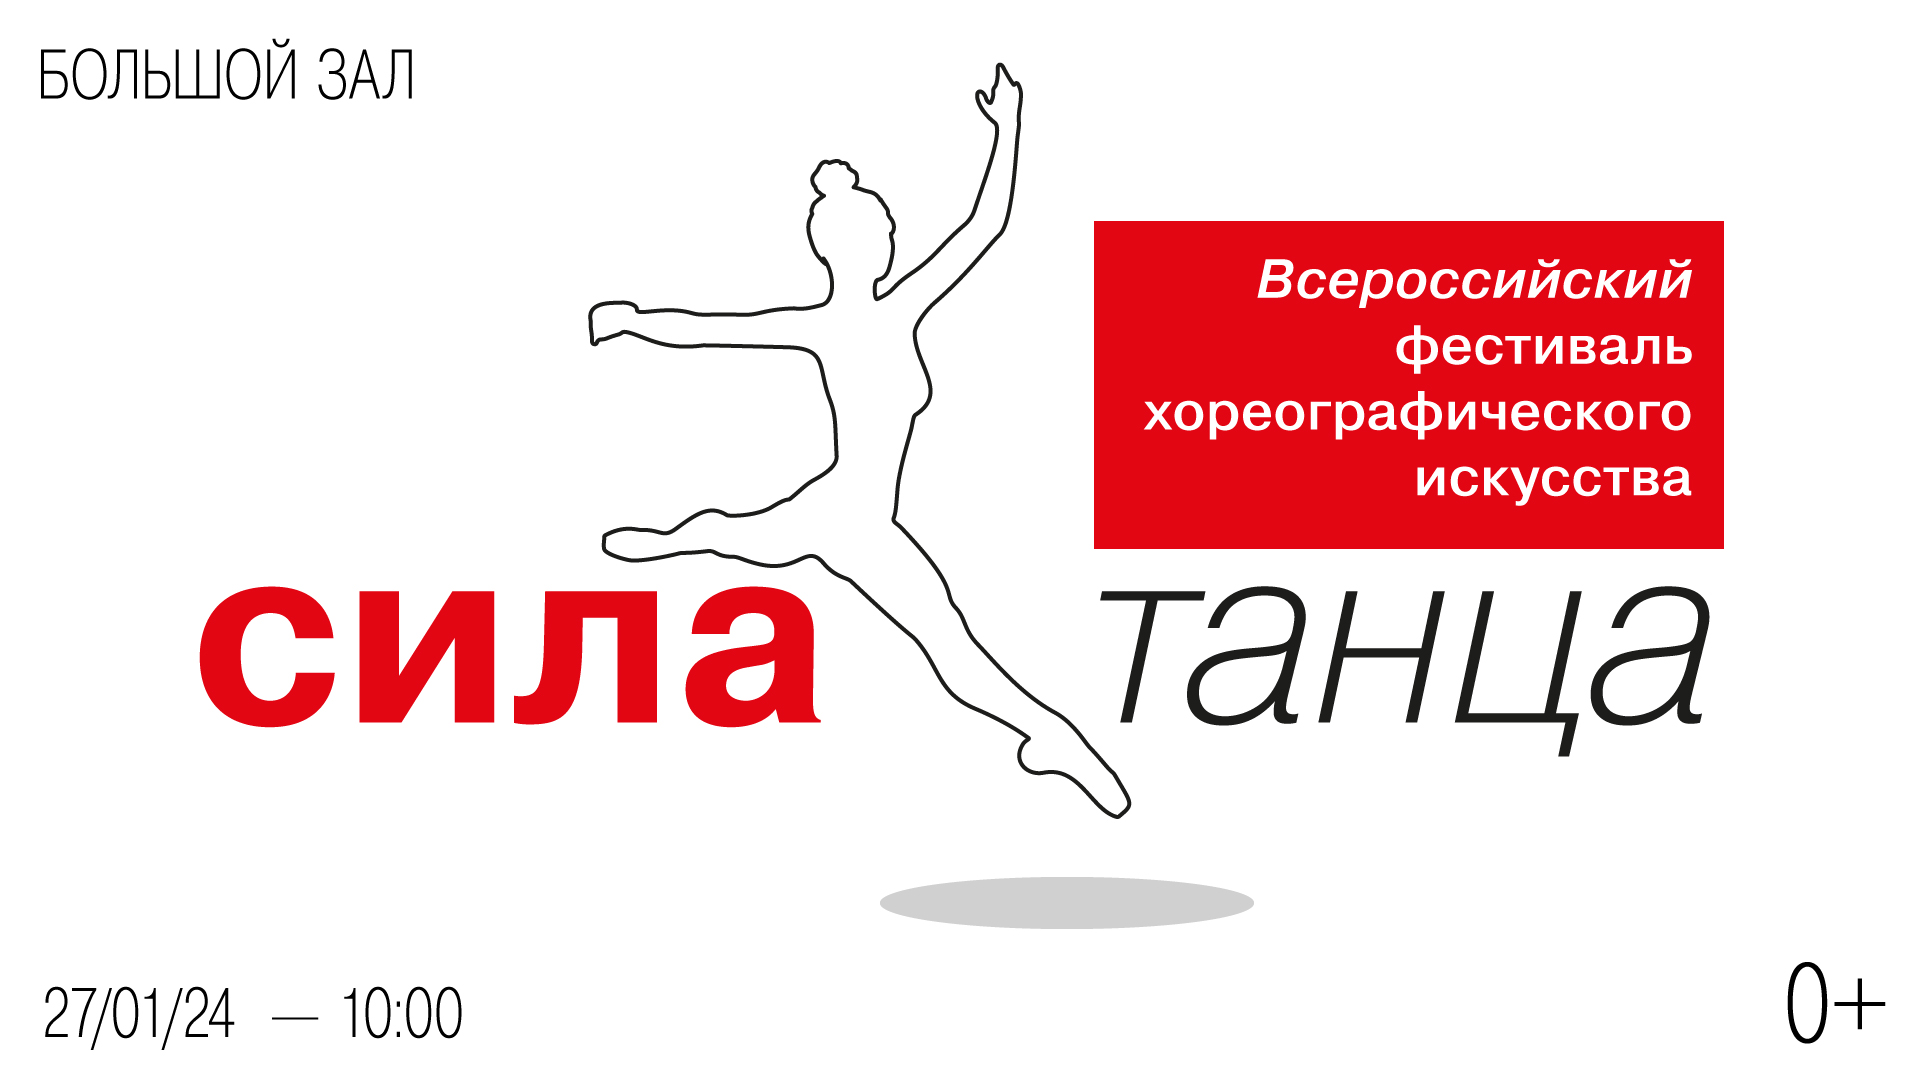 Всероссийский фестиваль хореографического искусства «Сила танца»